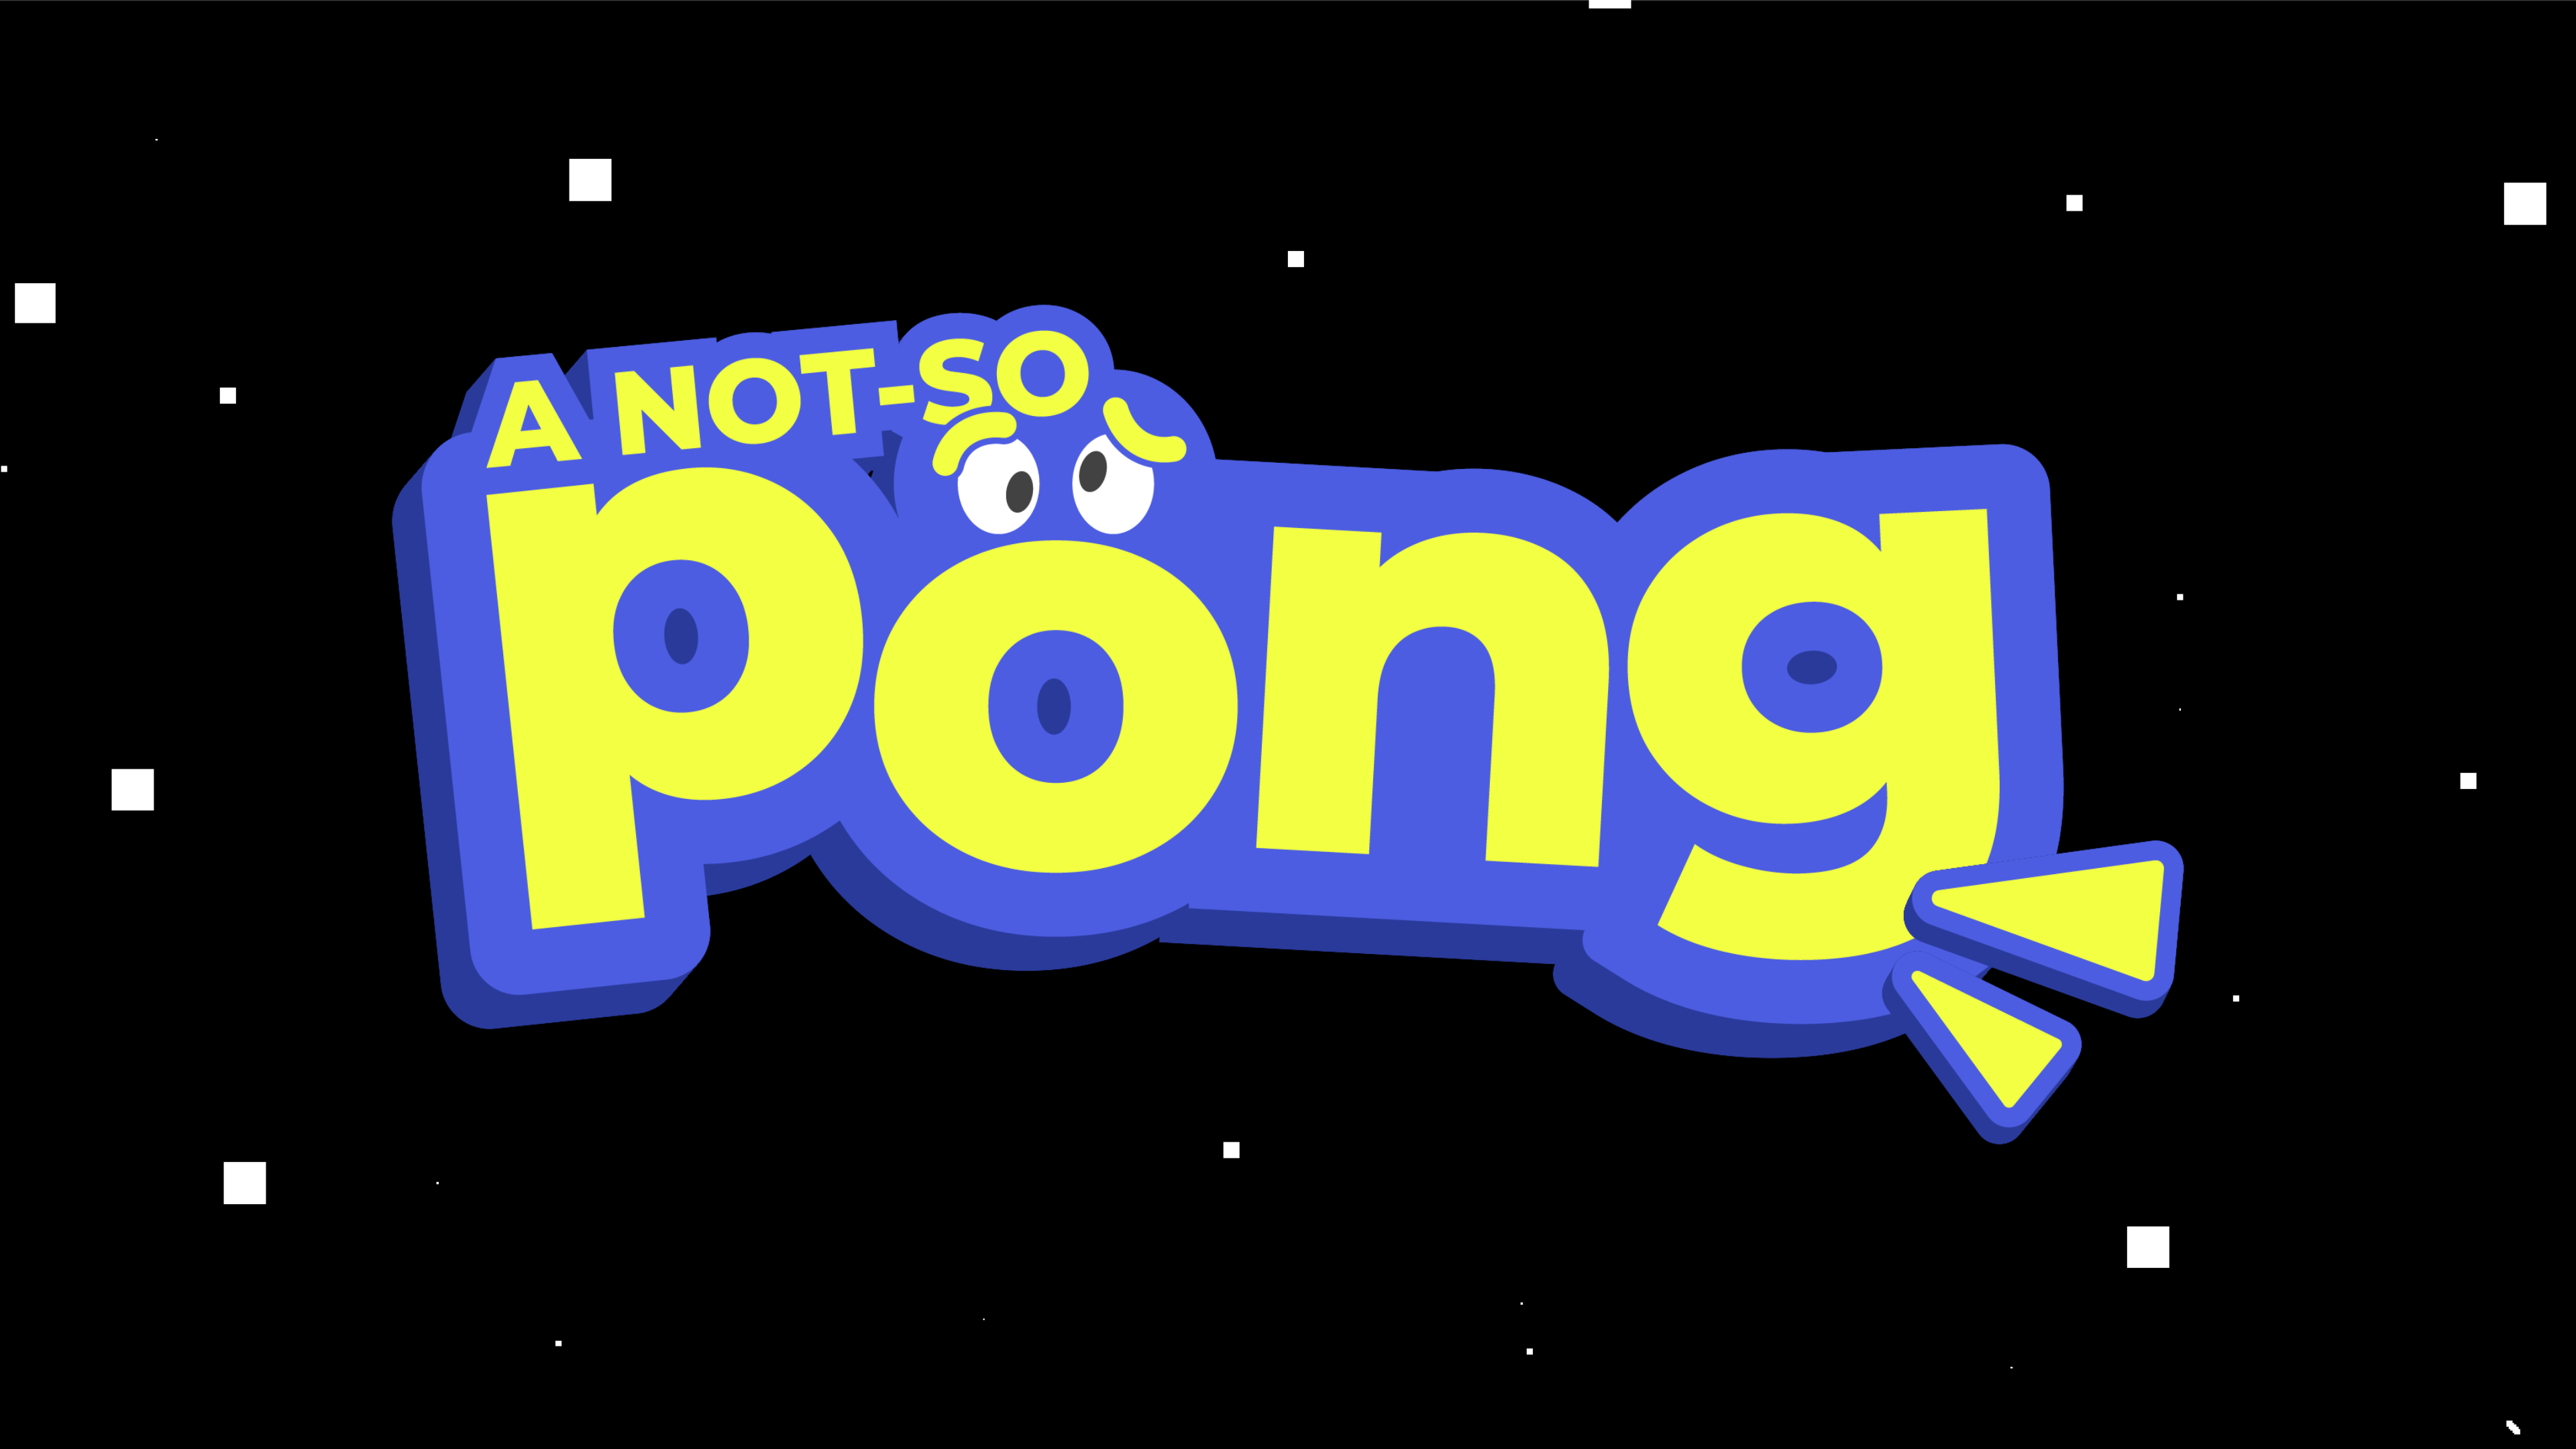 A Not-So Pong